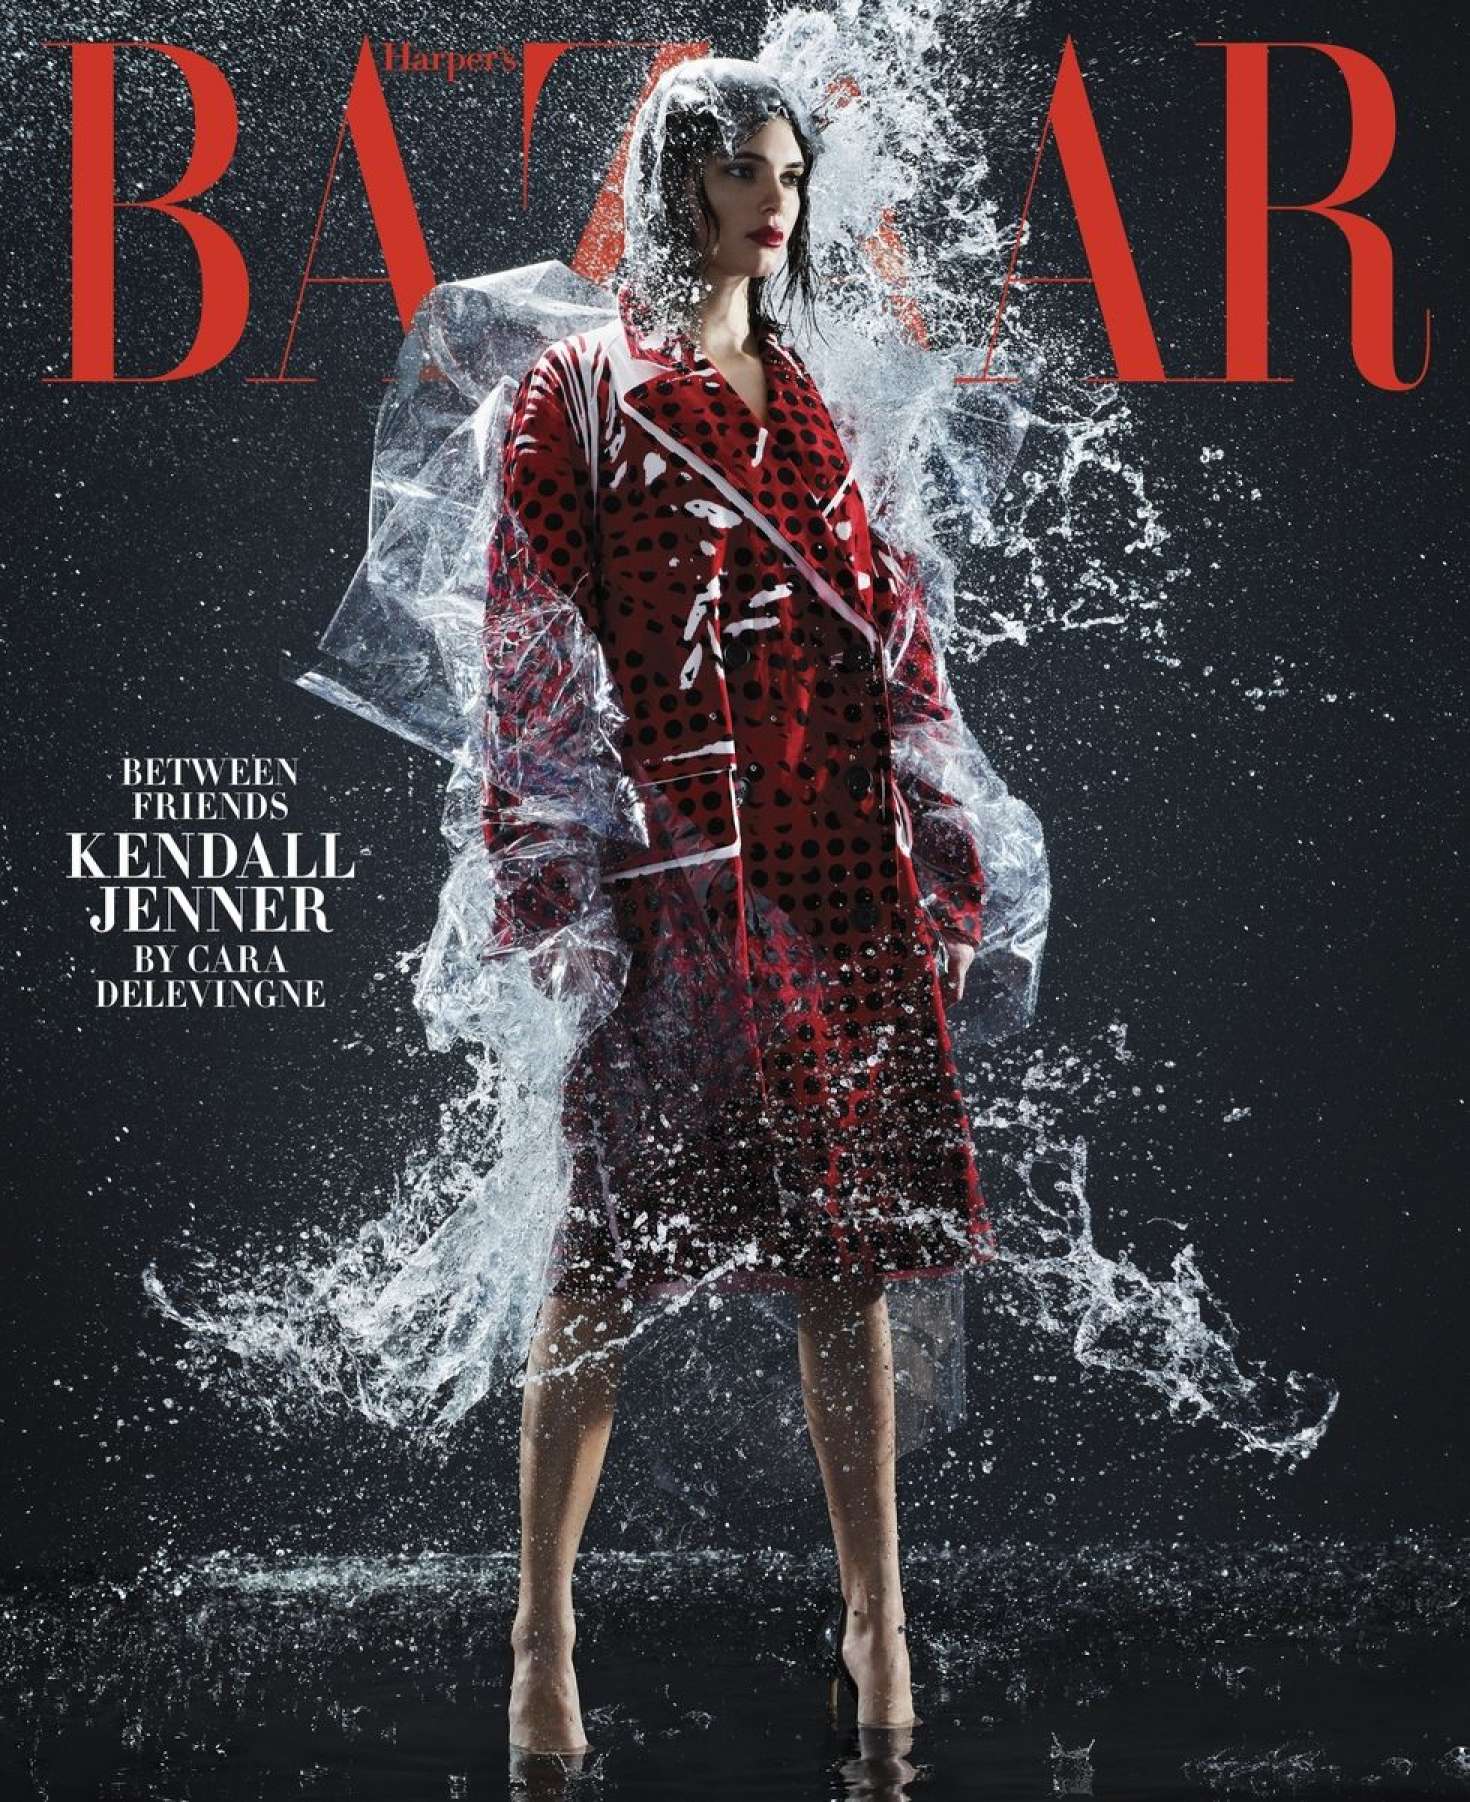 Kendall Jenner in Harper's Bazaar Magazine (February 2018)